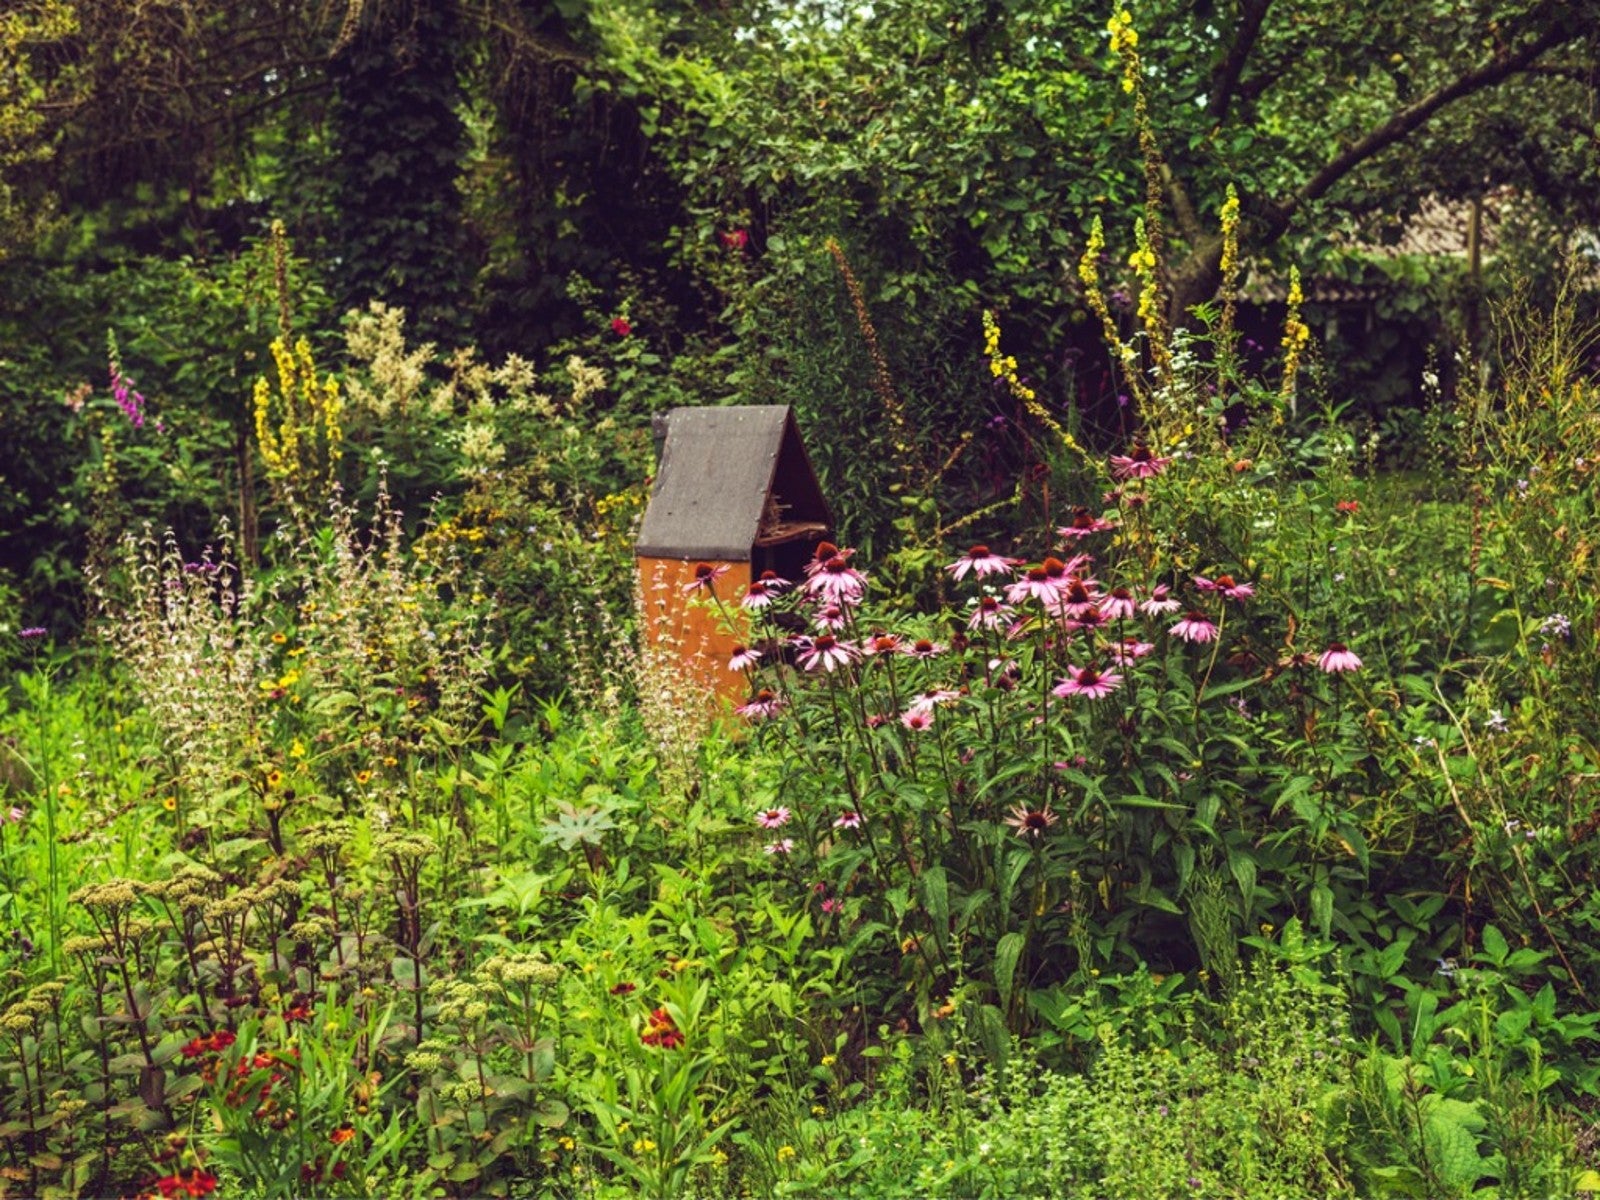 A birdhouse in a wildflower garden